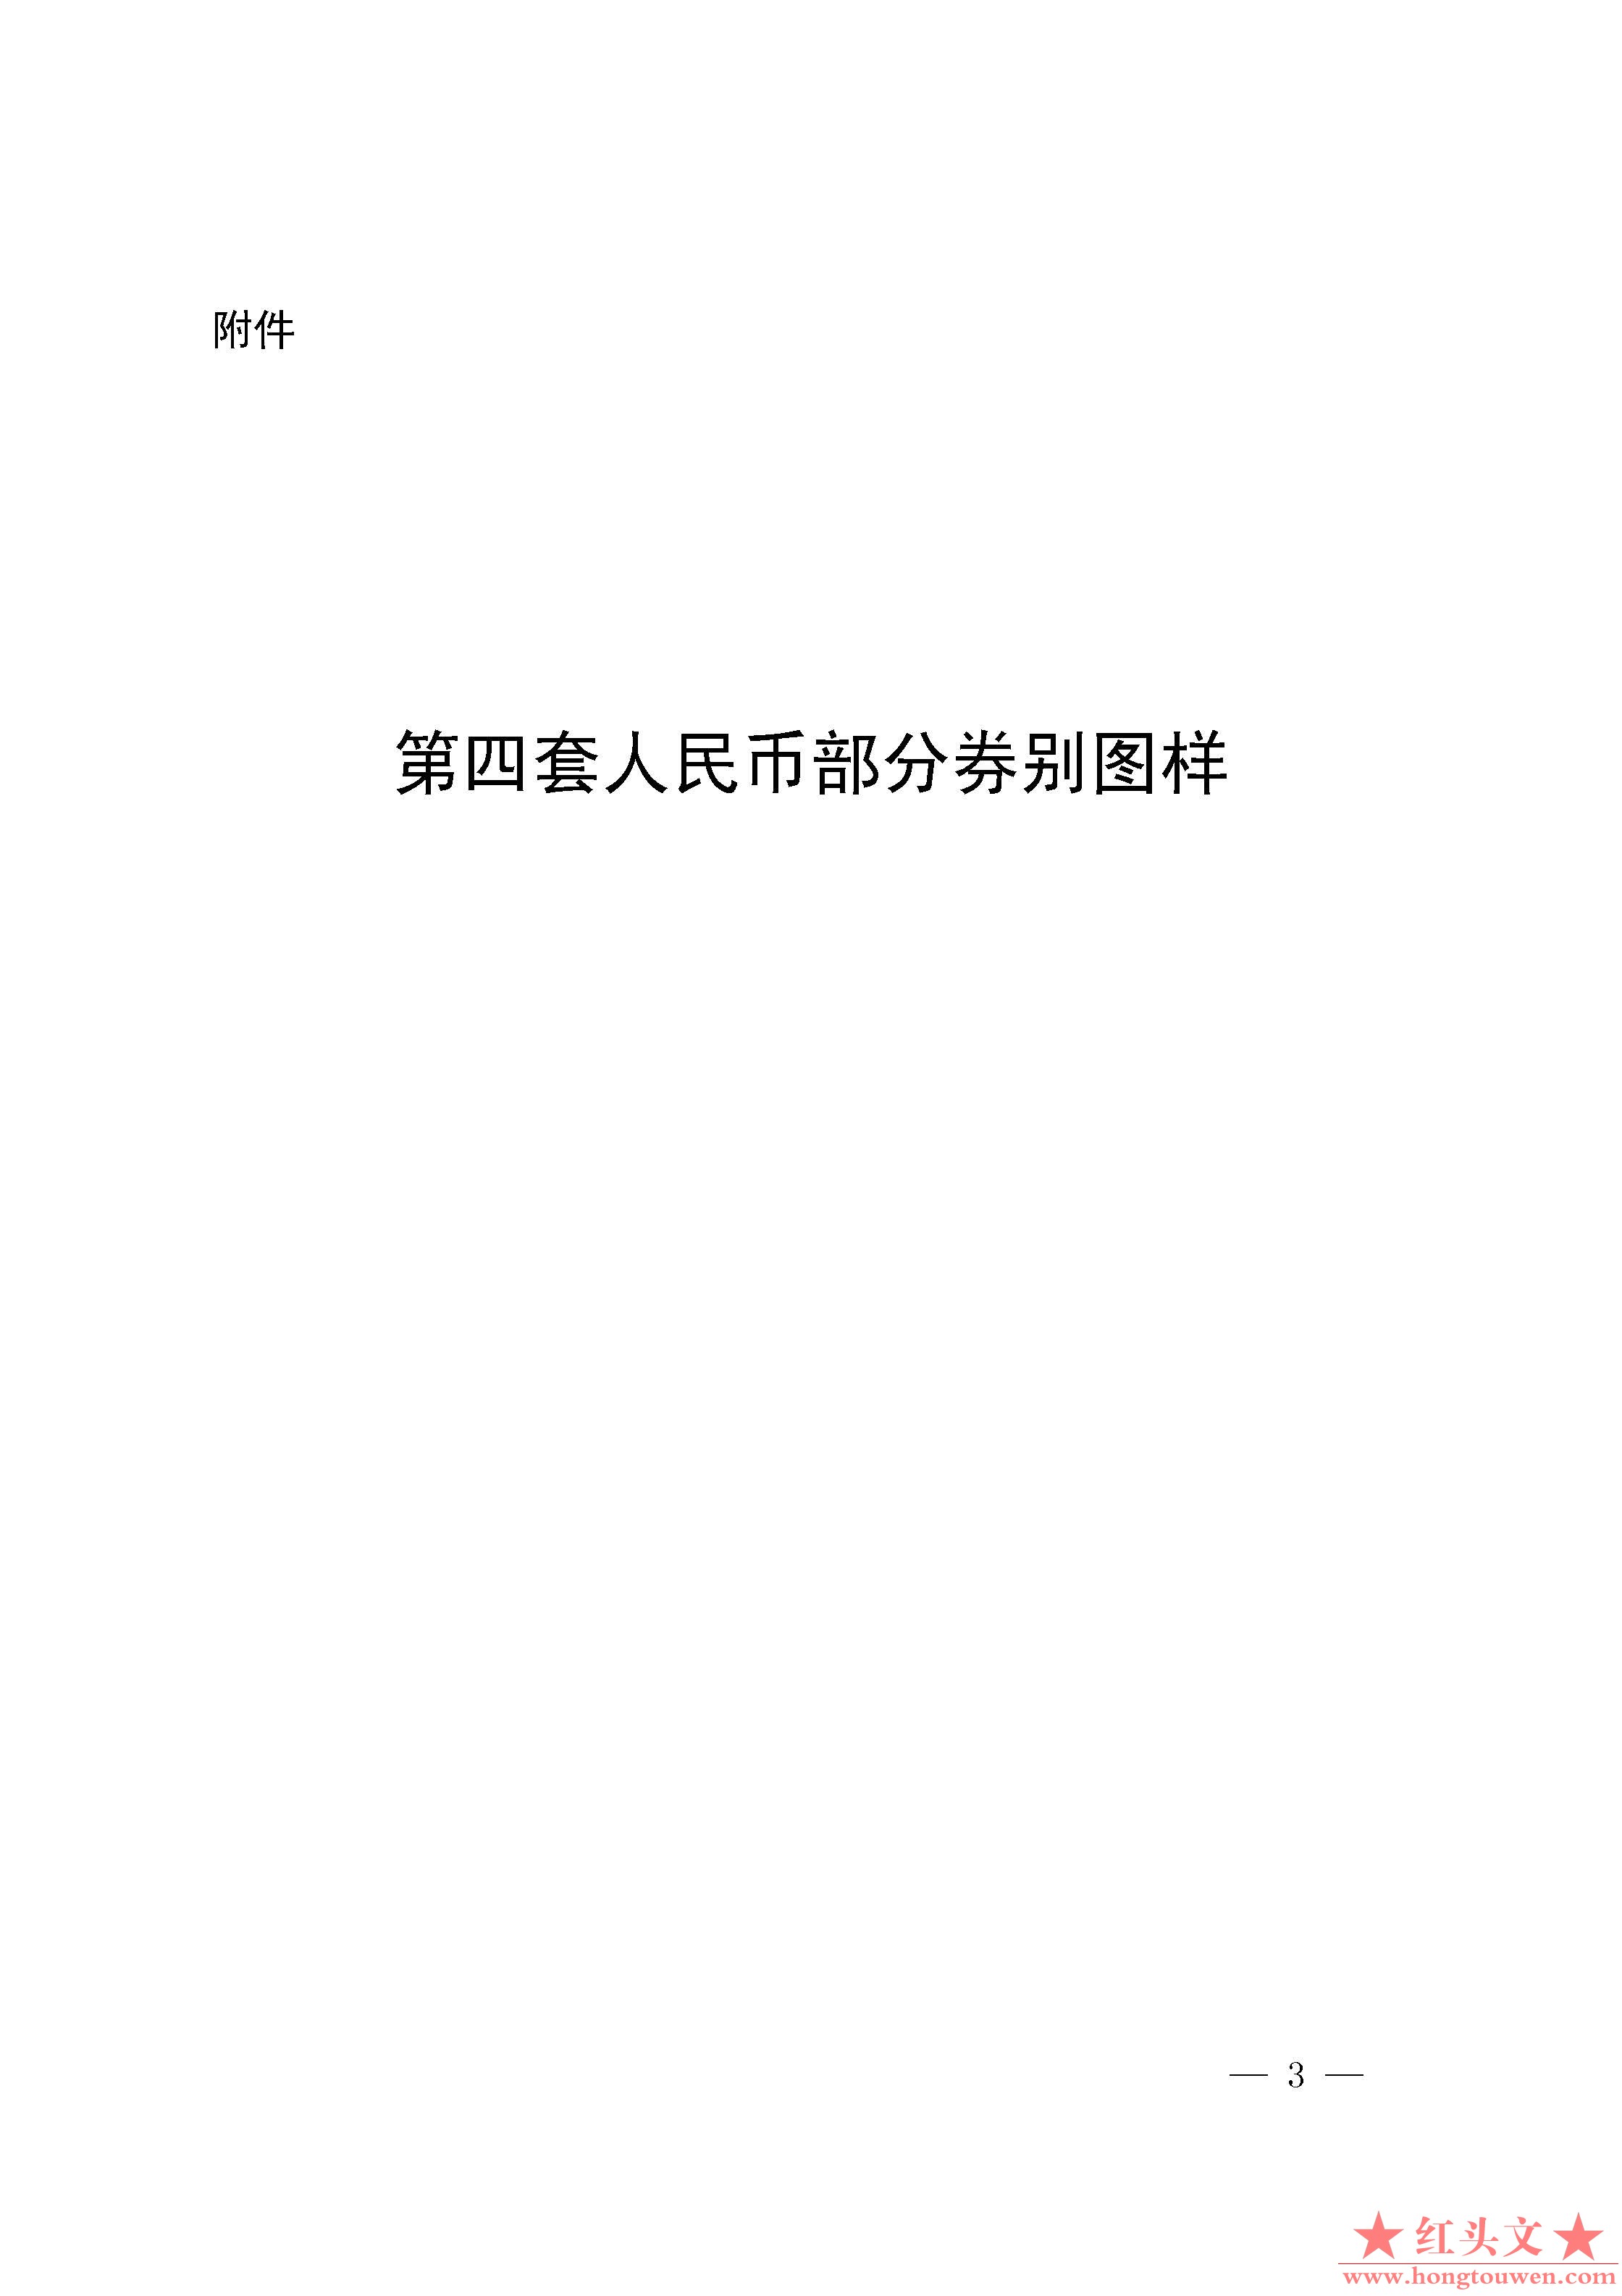 中国人民银行公告[2018]第6号-停止部分第四套人民币券别流通_页面_03.jpg.jpg